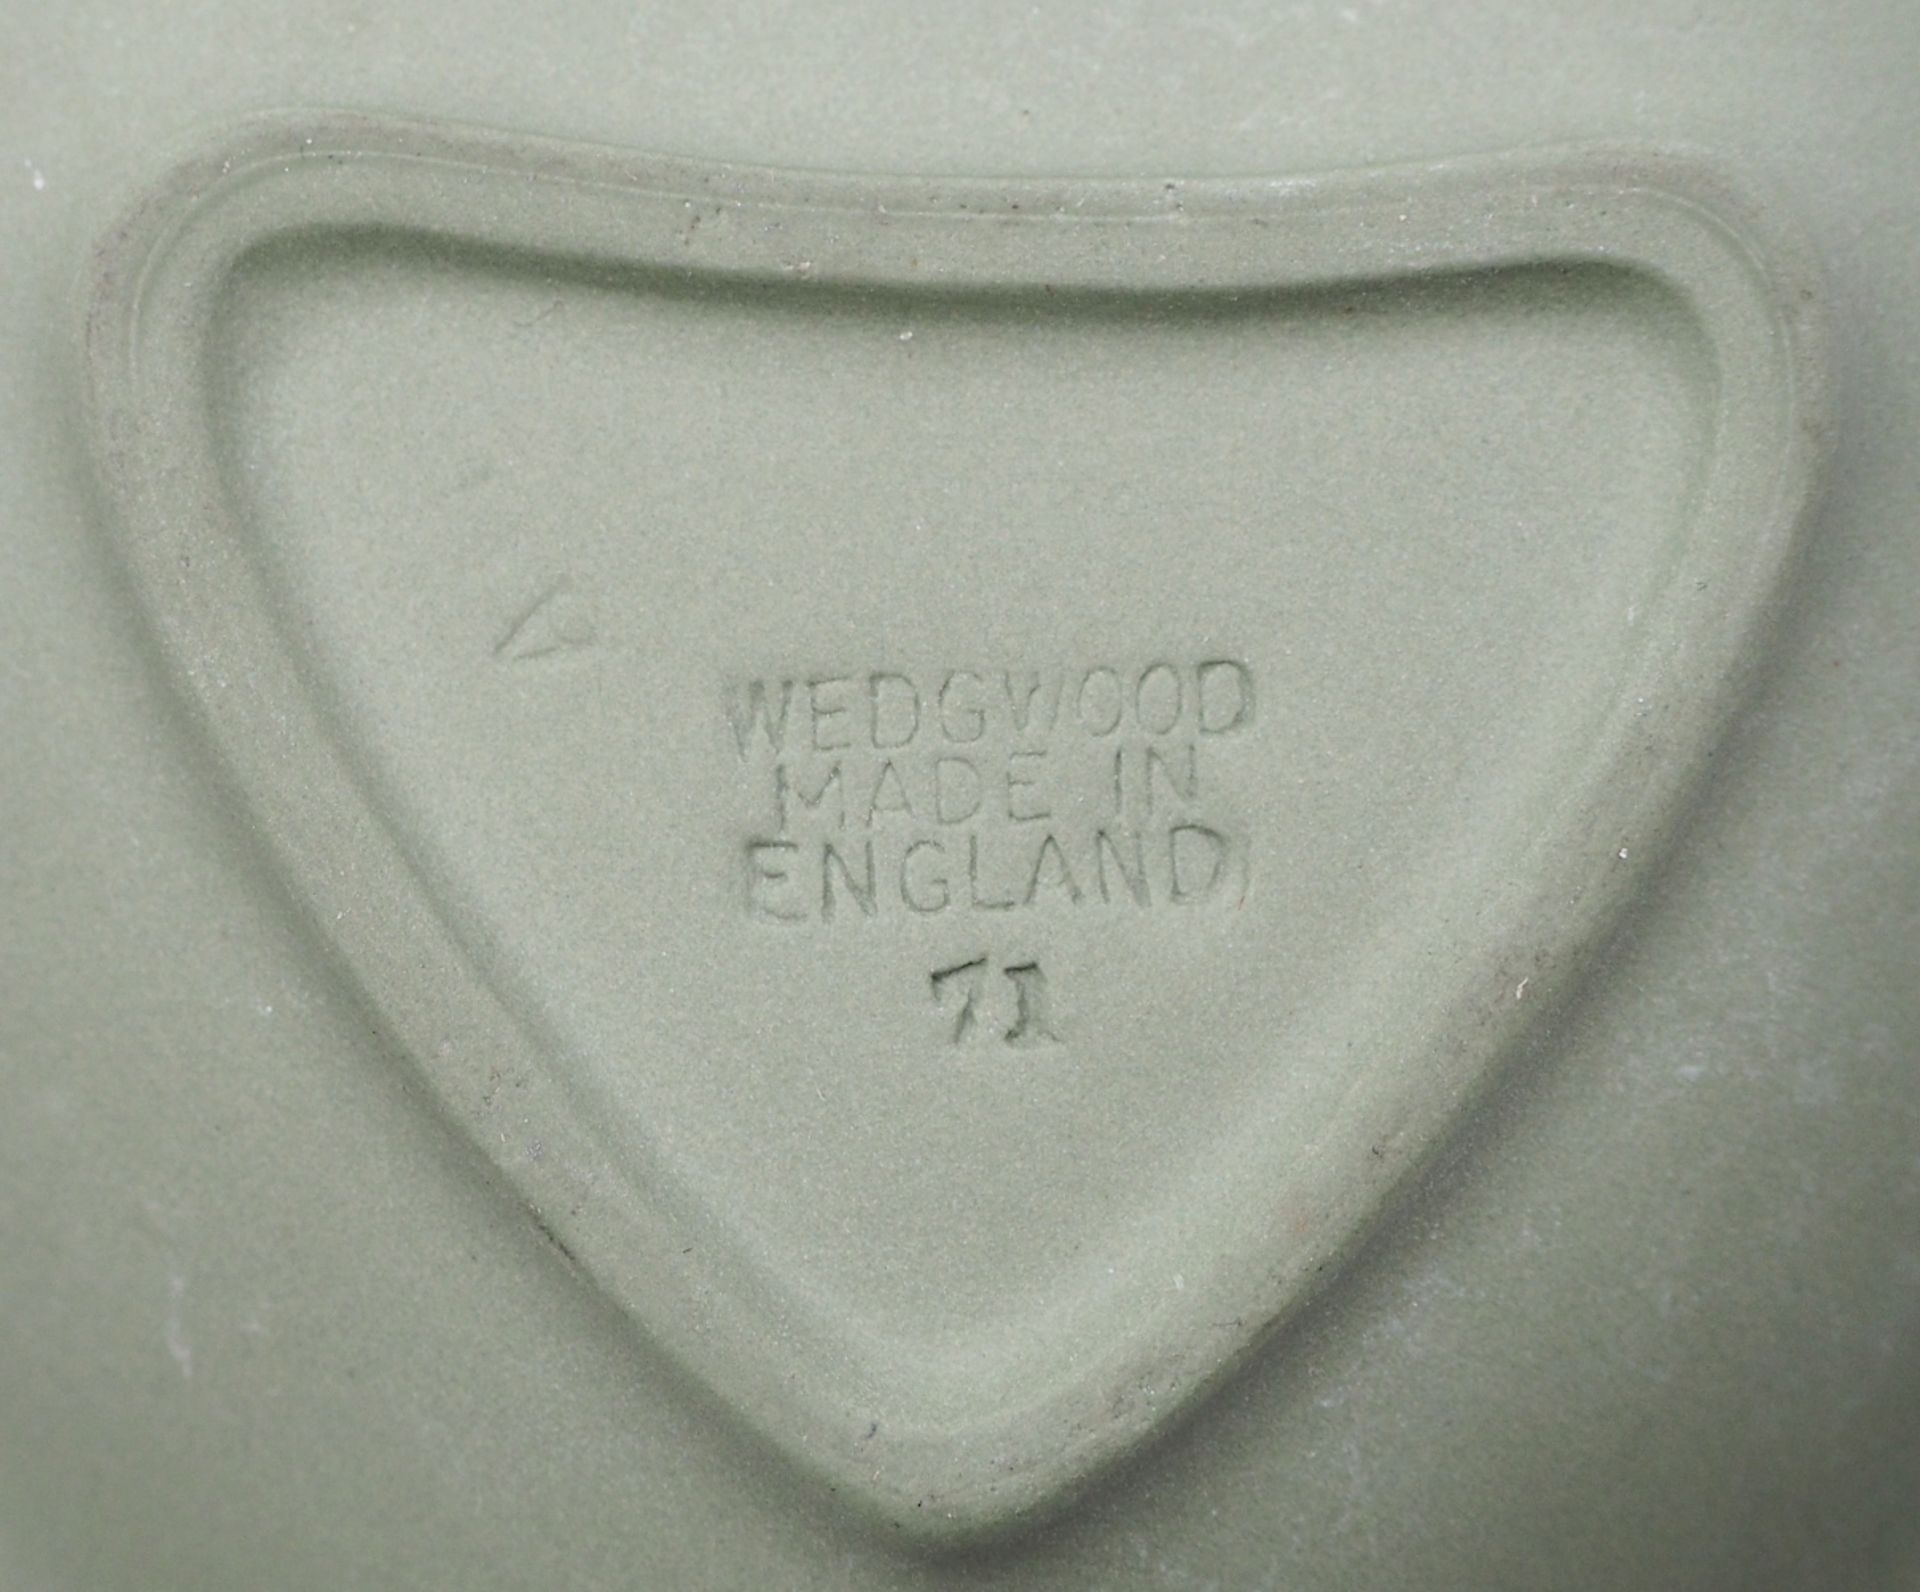 1 Set Schälchen WEDGWOOD, England Jasperware mattgrün mit weißem klassizistischem Reliefdekor - Image 2 of 2